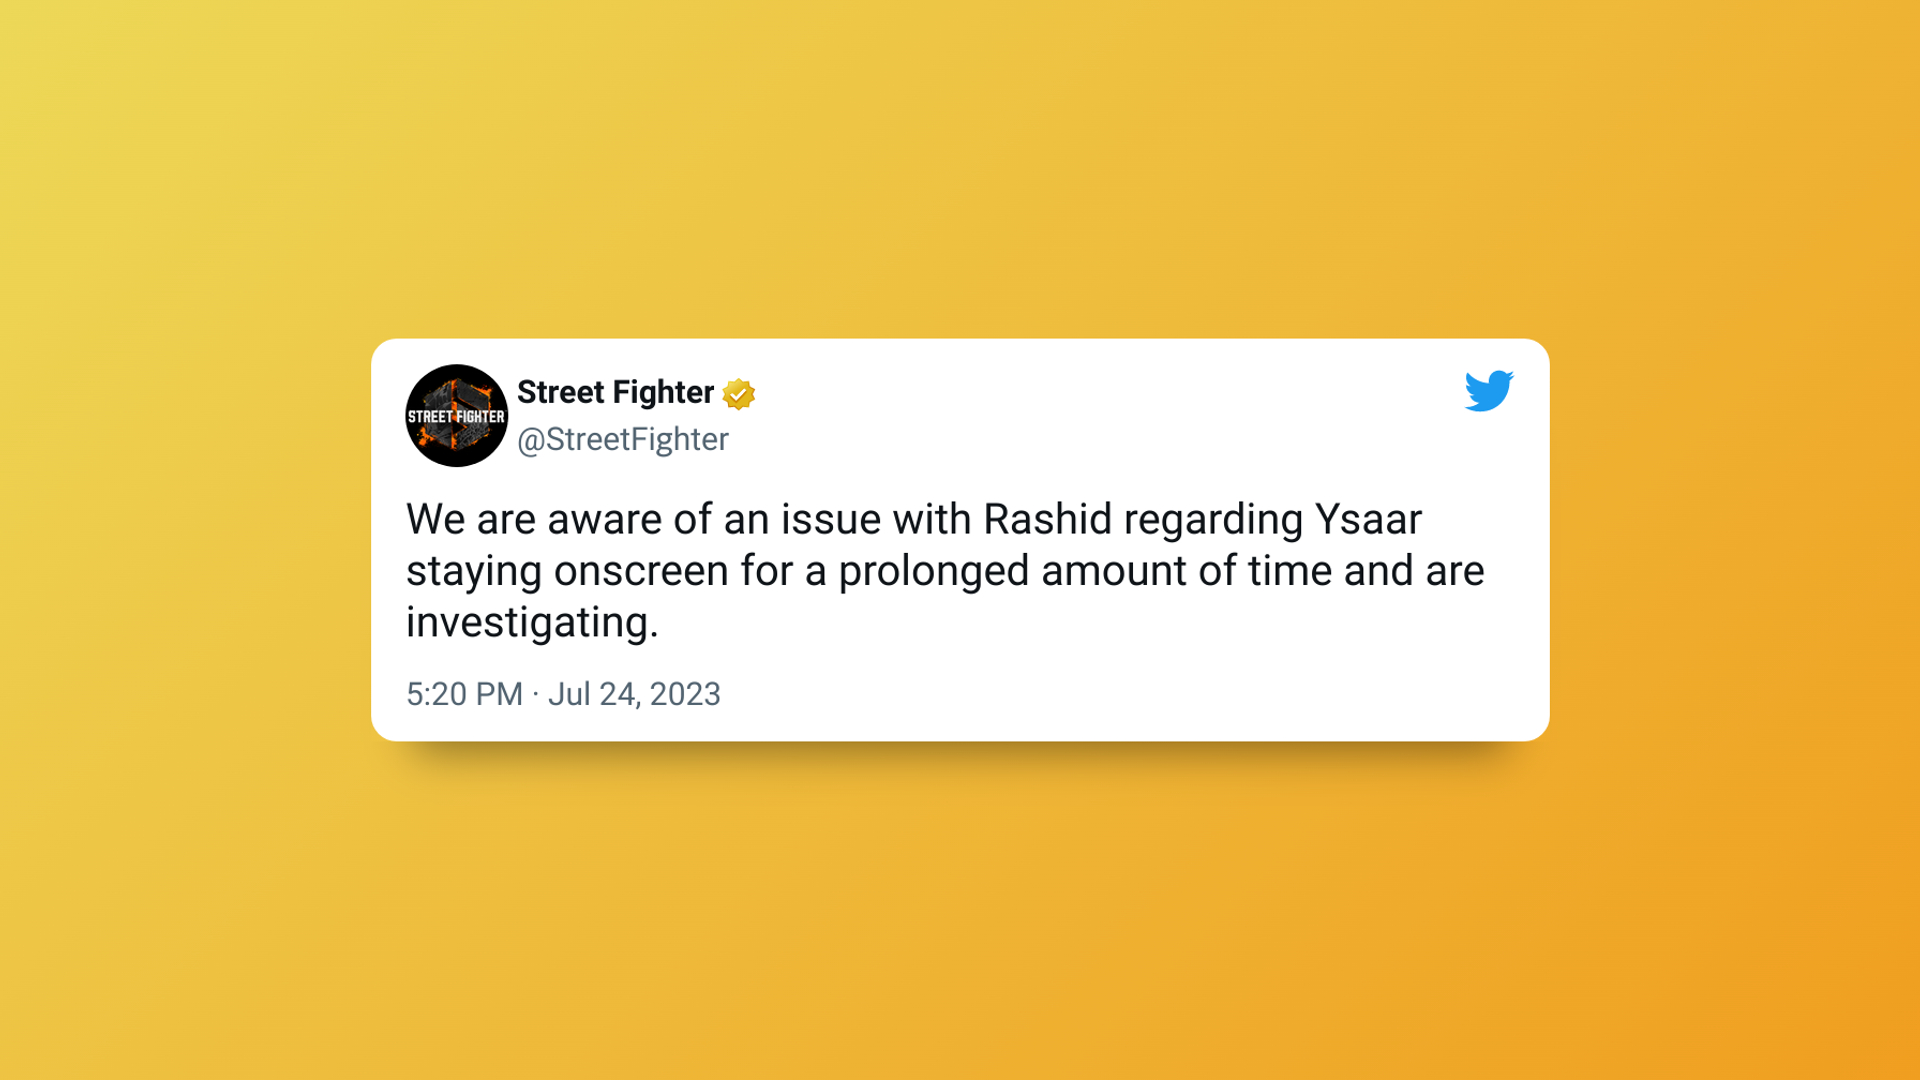 Capcom'dan Rashid sorunlarının farkında olduklarını gösteren Tweet